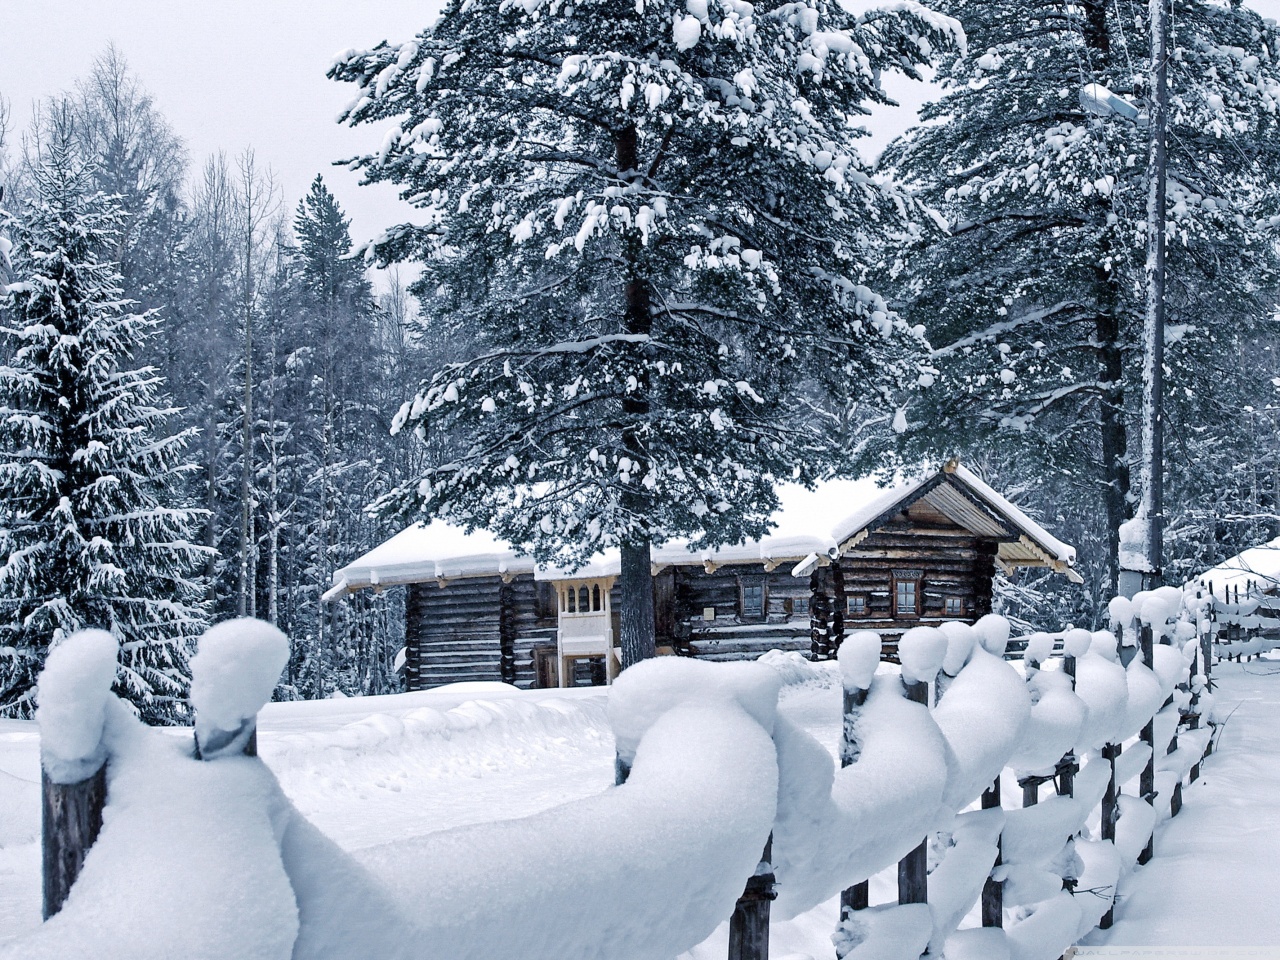 صور خلفيات ثلوج لسطح المكتب 2014 , صور جميلة لمناطق مغطية بالثلج 2014 snow wallpaper hd